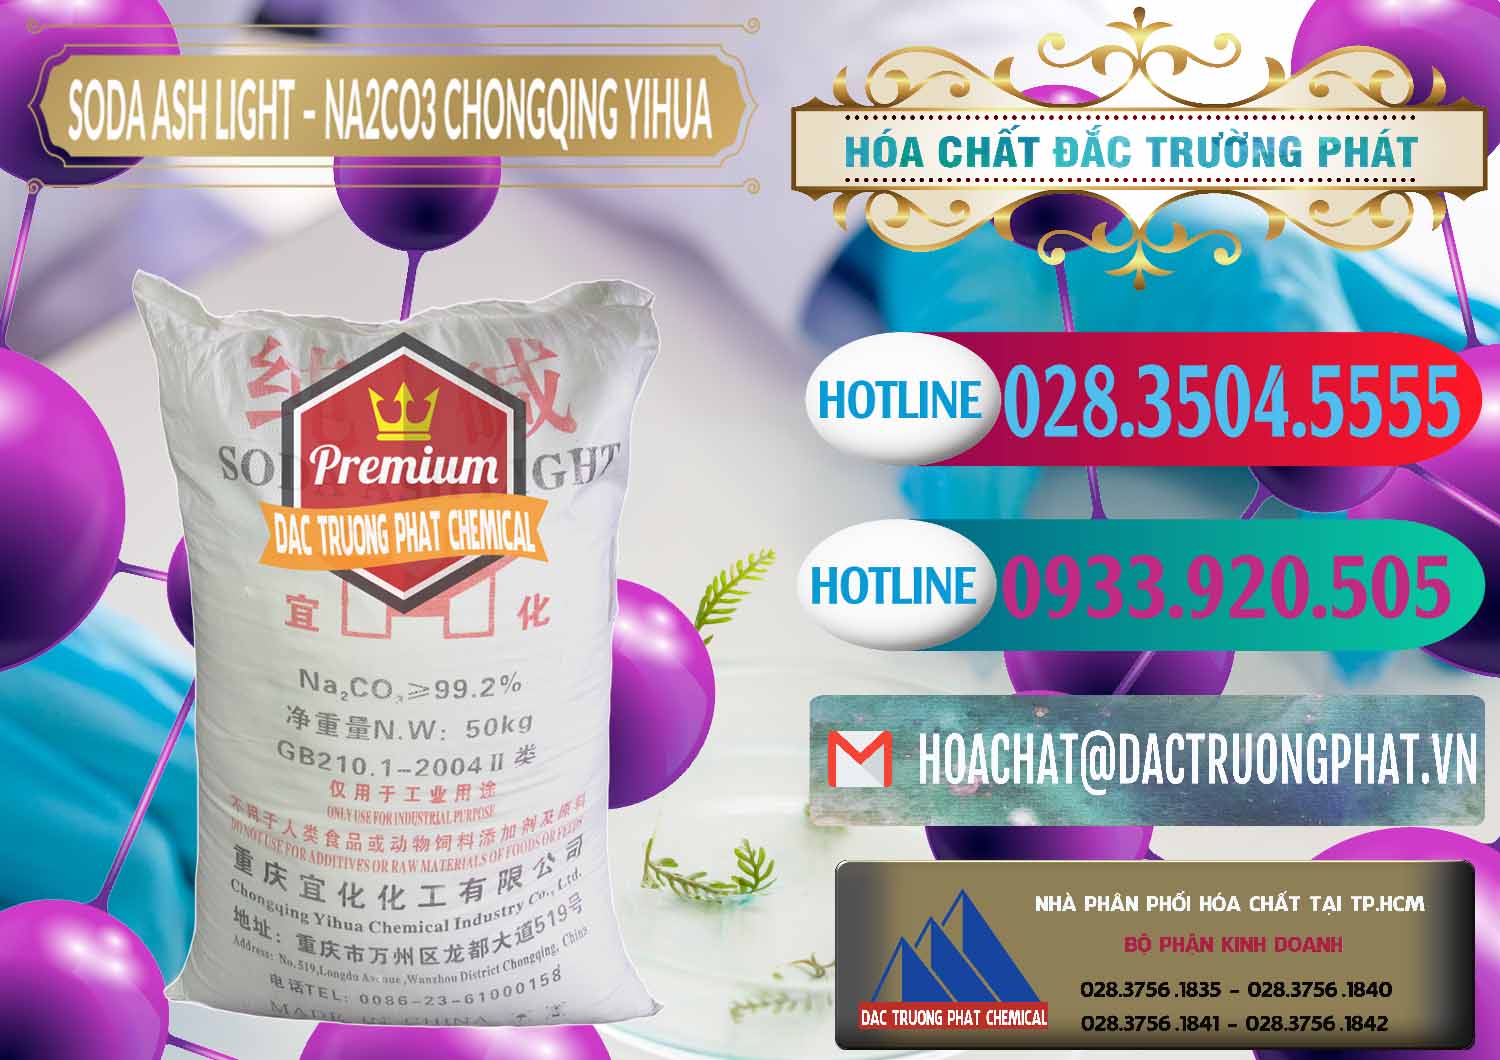 Cty chuyên bán và cung cấp Soda Ash Light - NA2CO3 Chongqing Yihua Trung Quốc China - 0129 - Cty bán _ cung cấp hóa chất tại TP.HCM - truongphat.vn